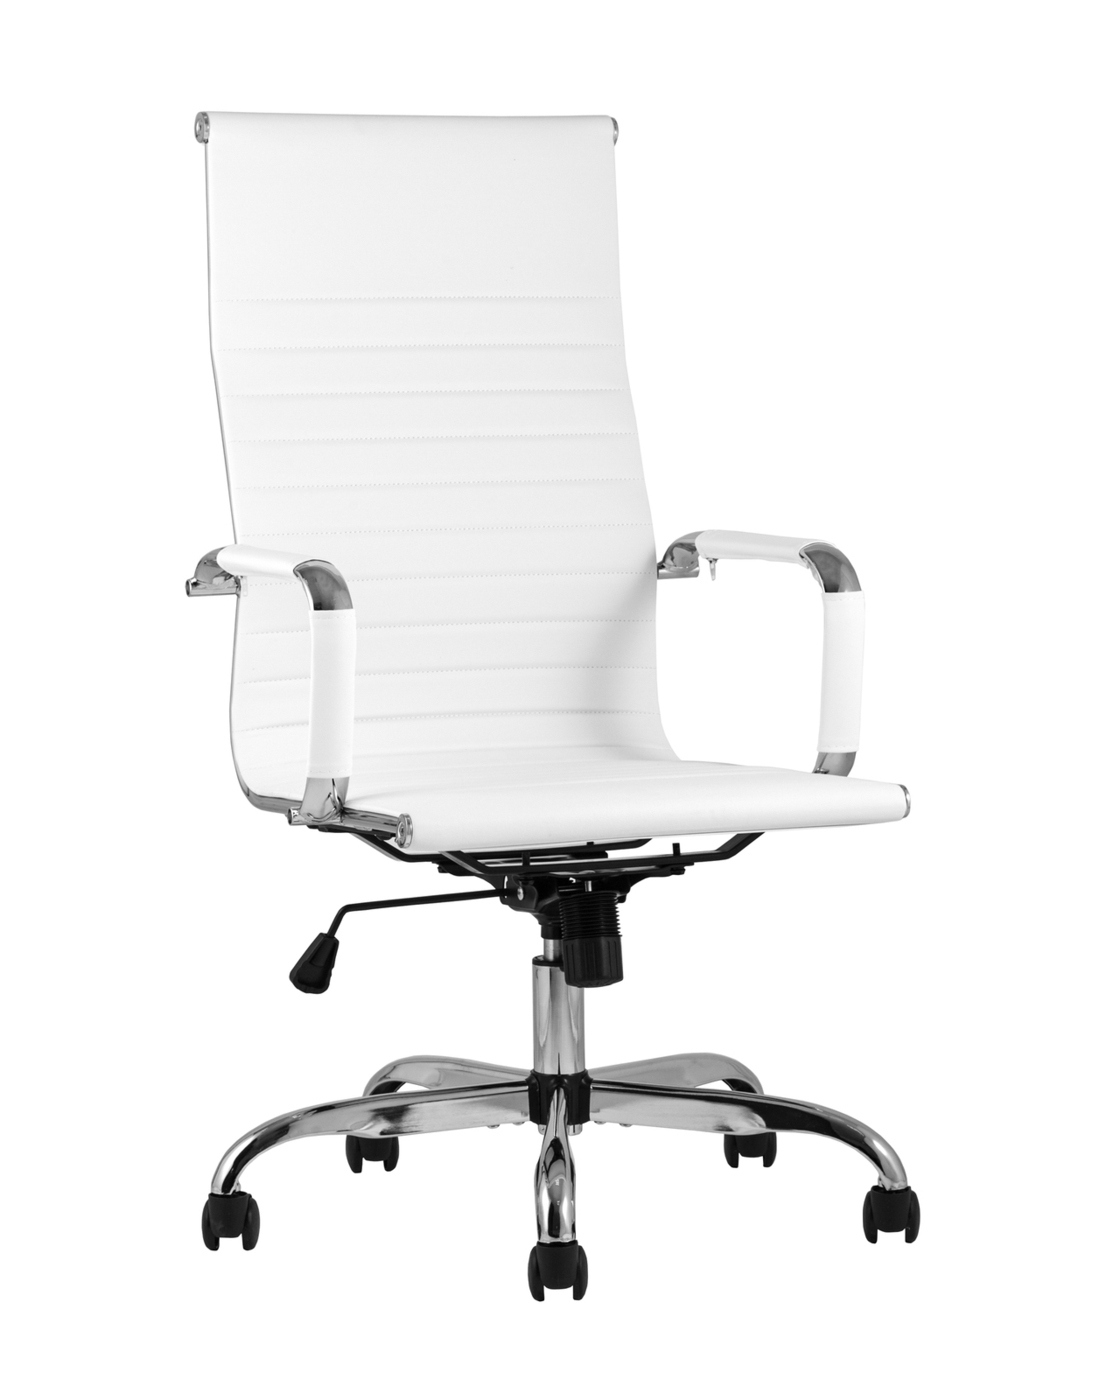 90417504 Офисное кресло City экокожа цвет белый STLM-0222369 СТУЛ ГРУП